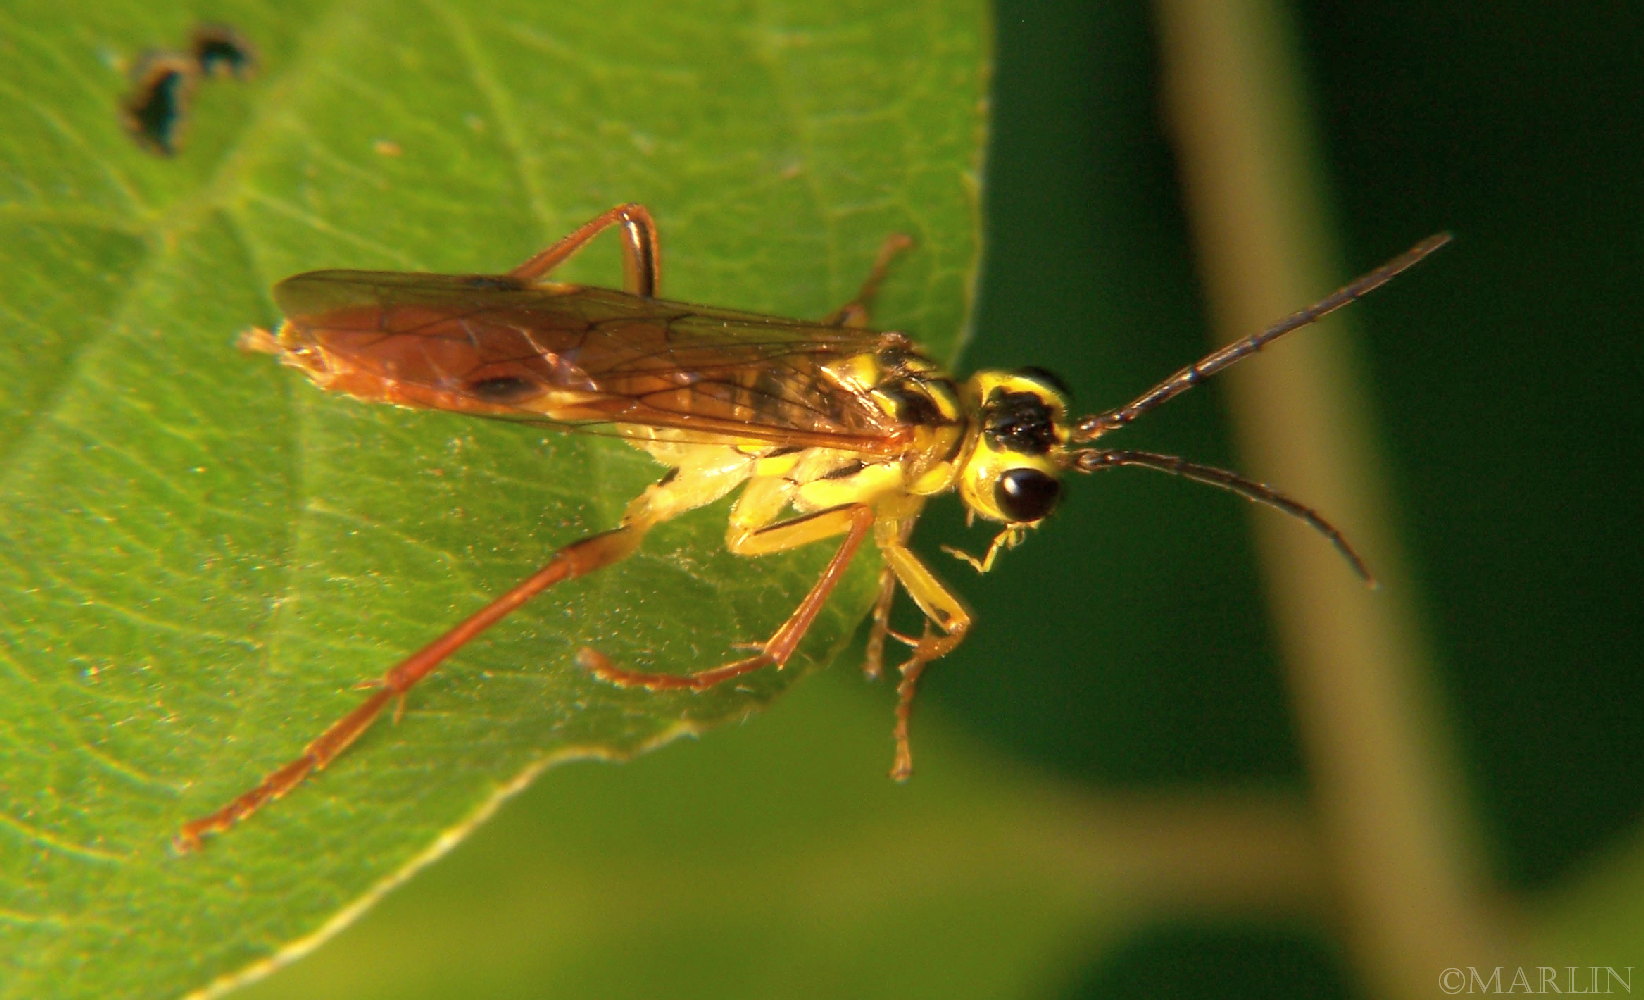 yellow sawfly eats beetle prey